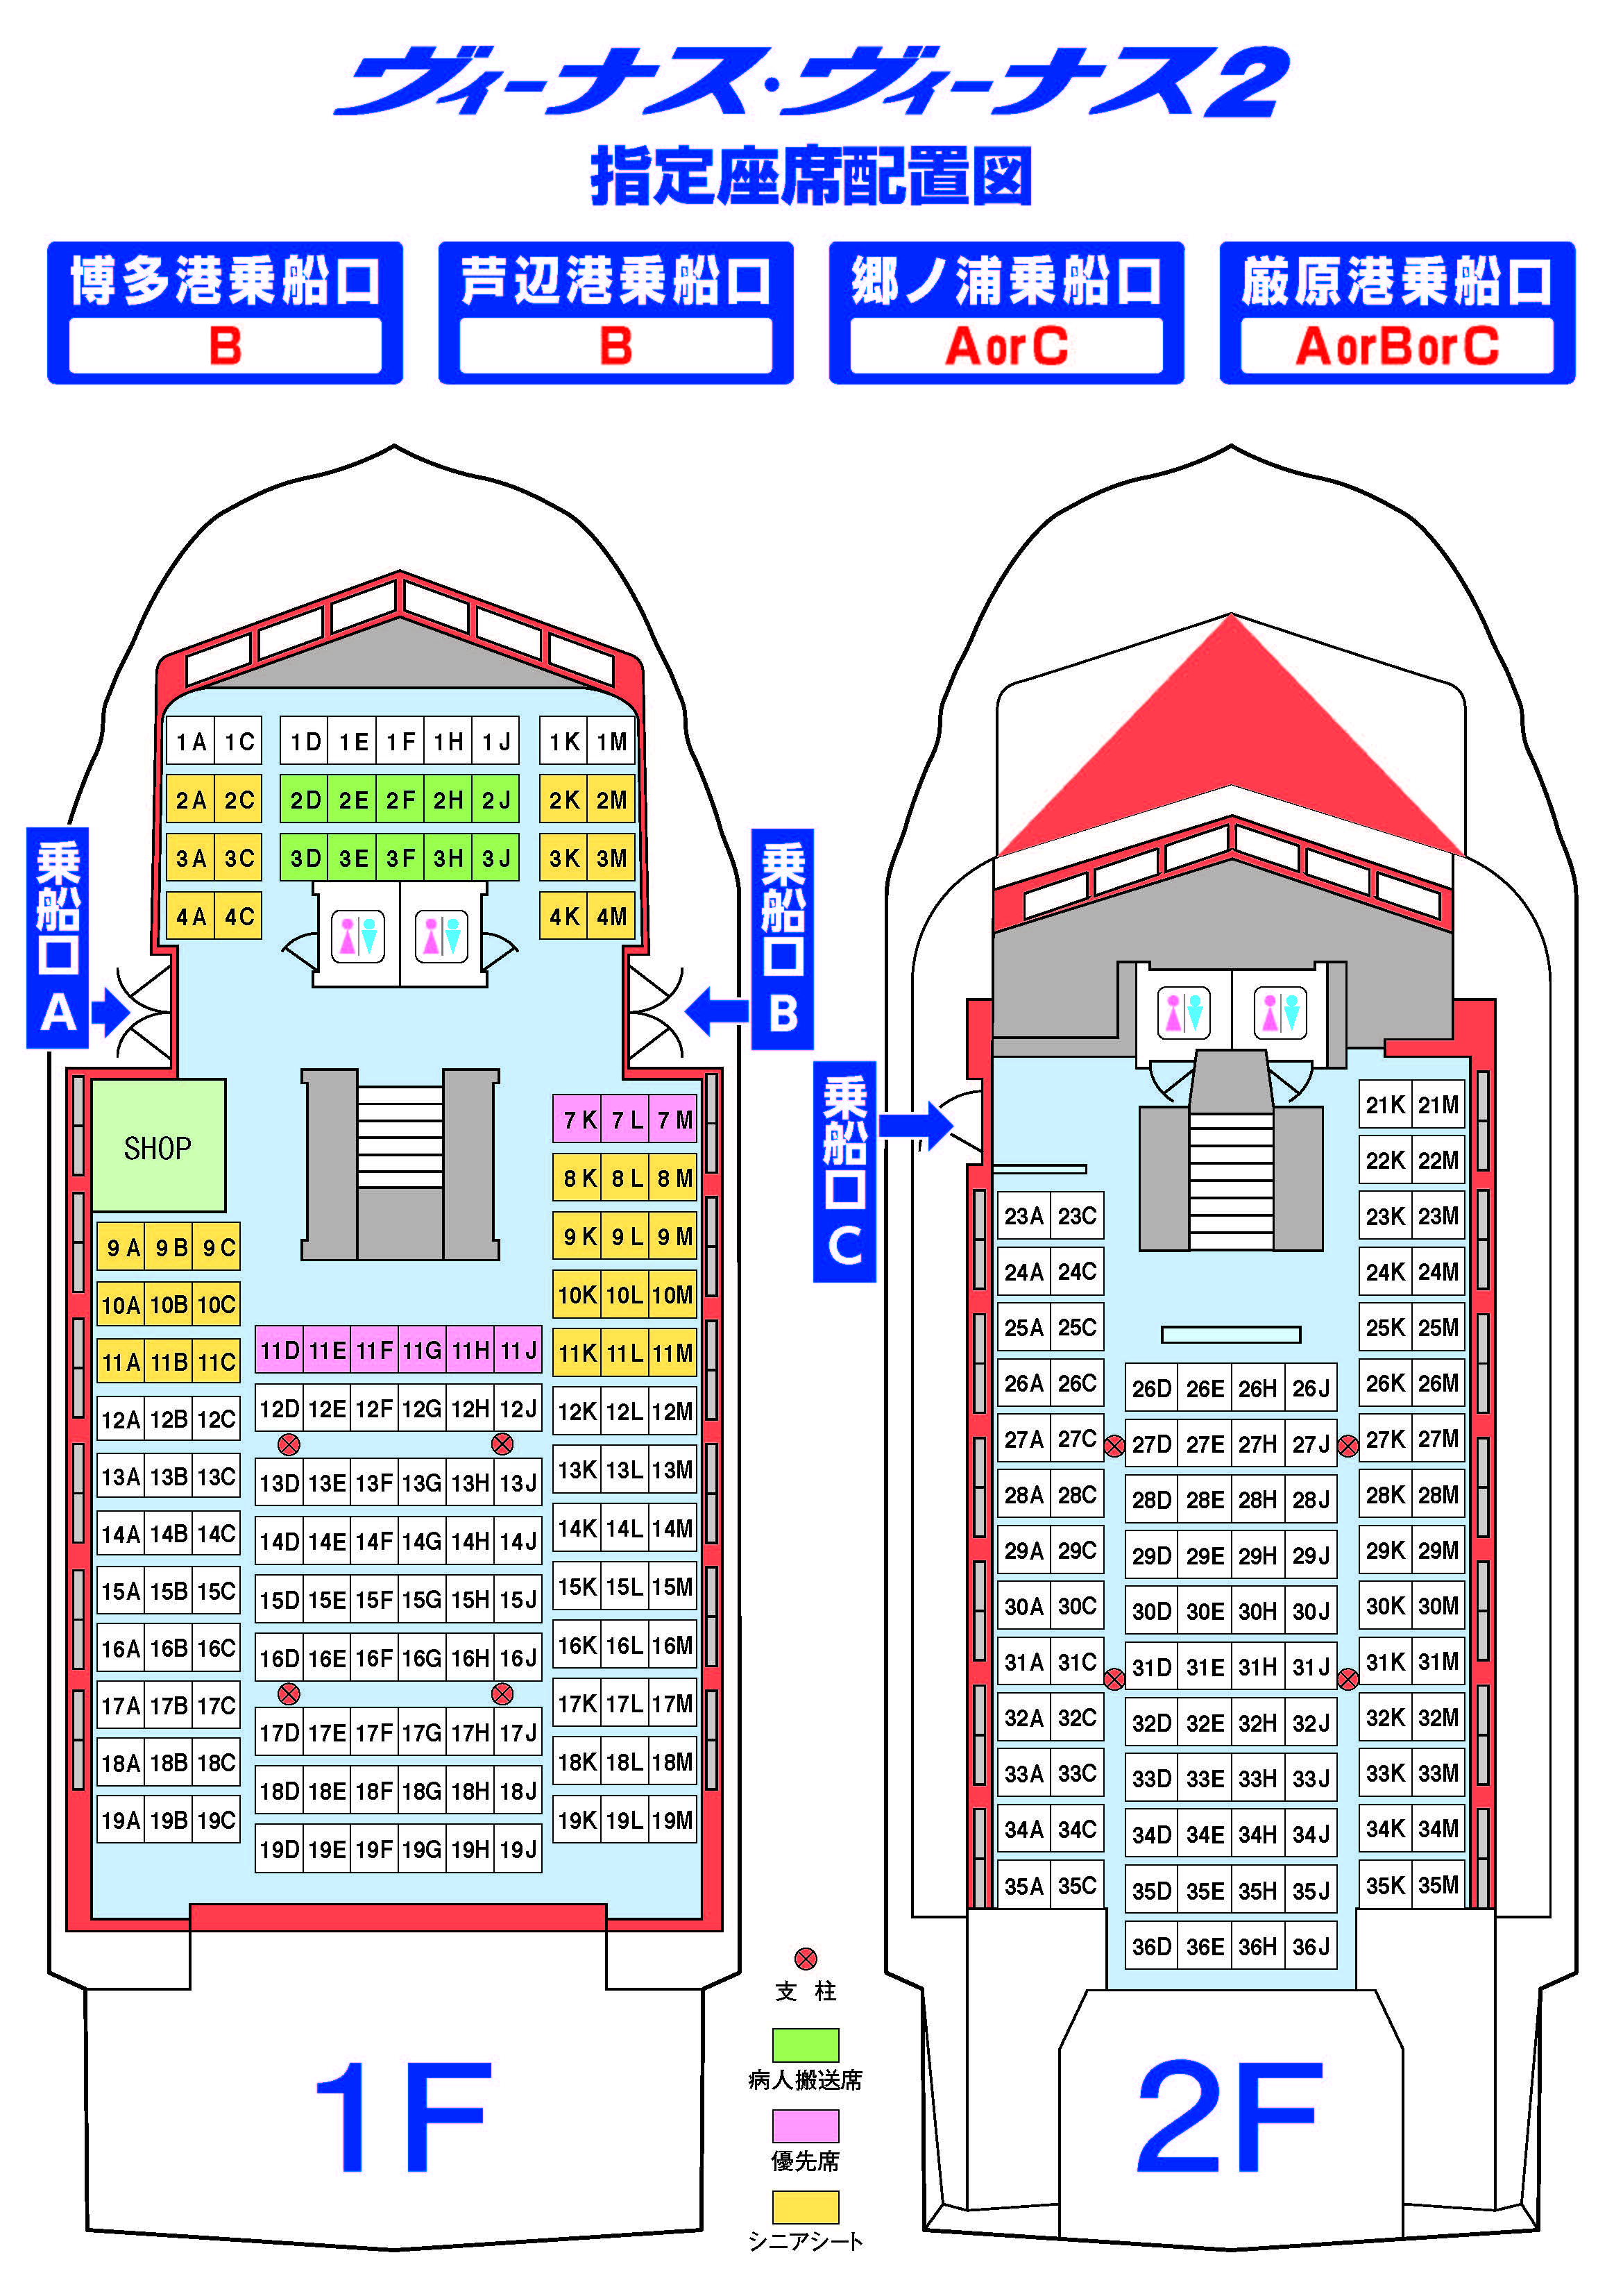 ヴィーナス・ビーナス2指定座席配置図